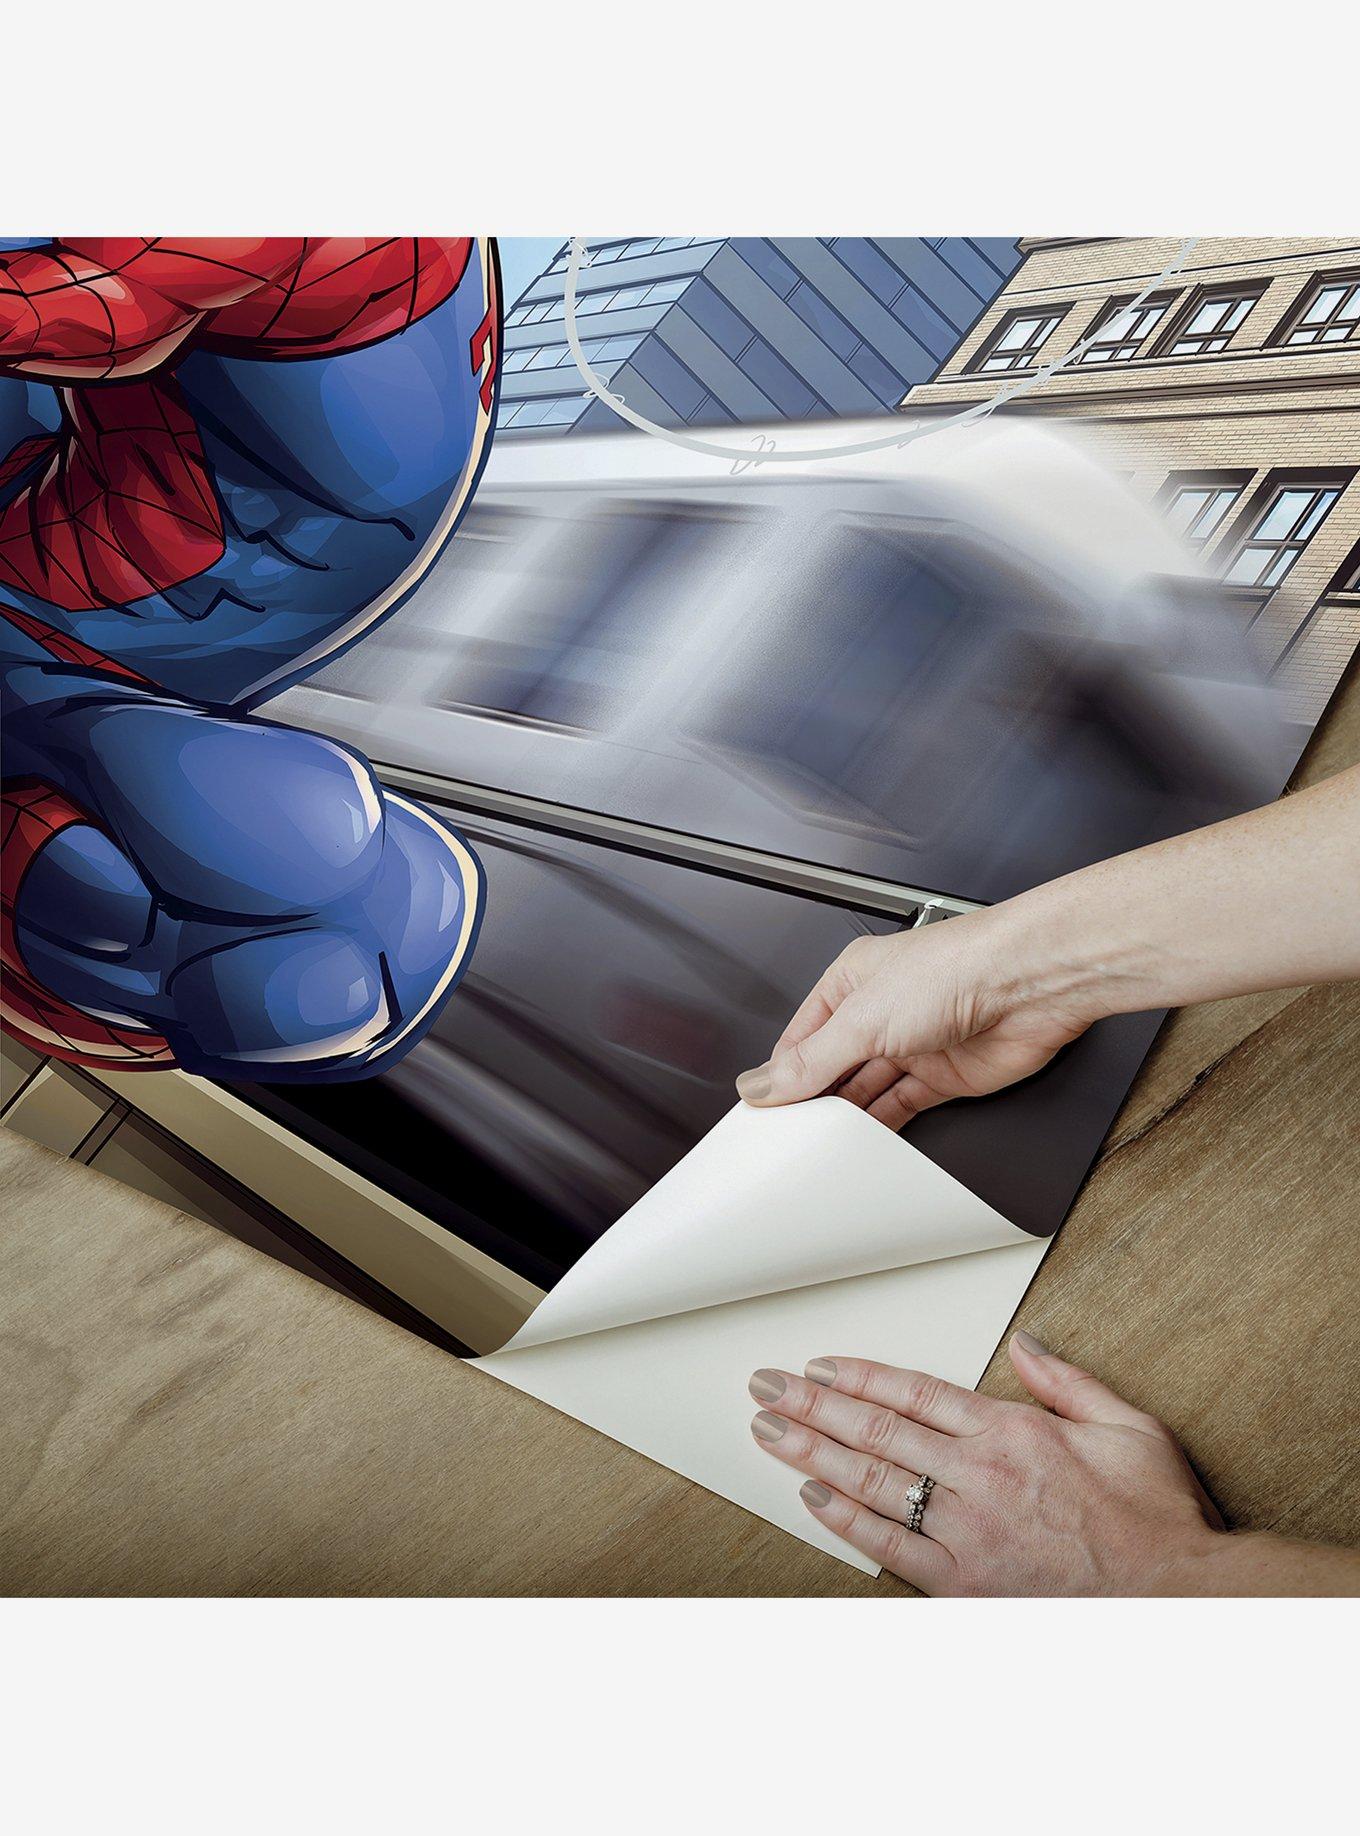 Marvel Spider-Man Blue Peel & Stick Wallpaper Mural, , alternate